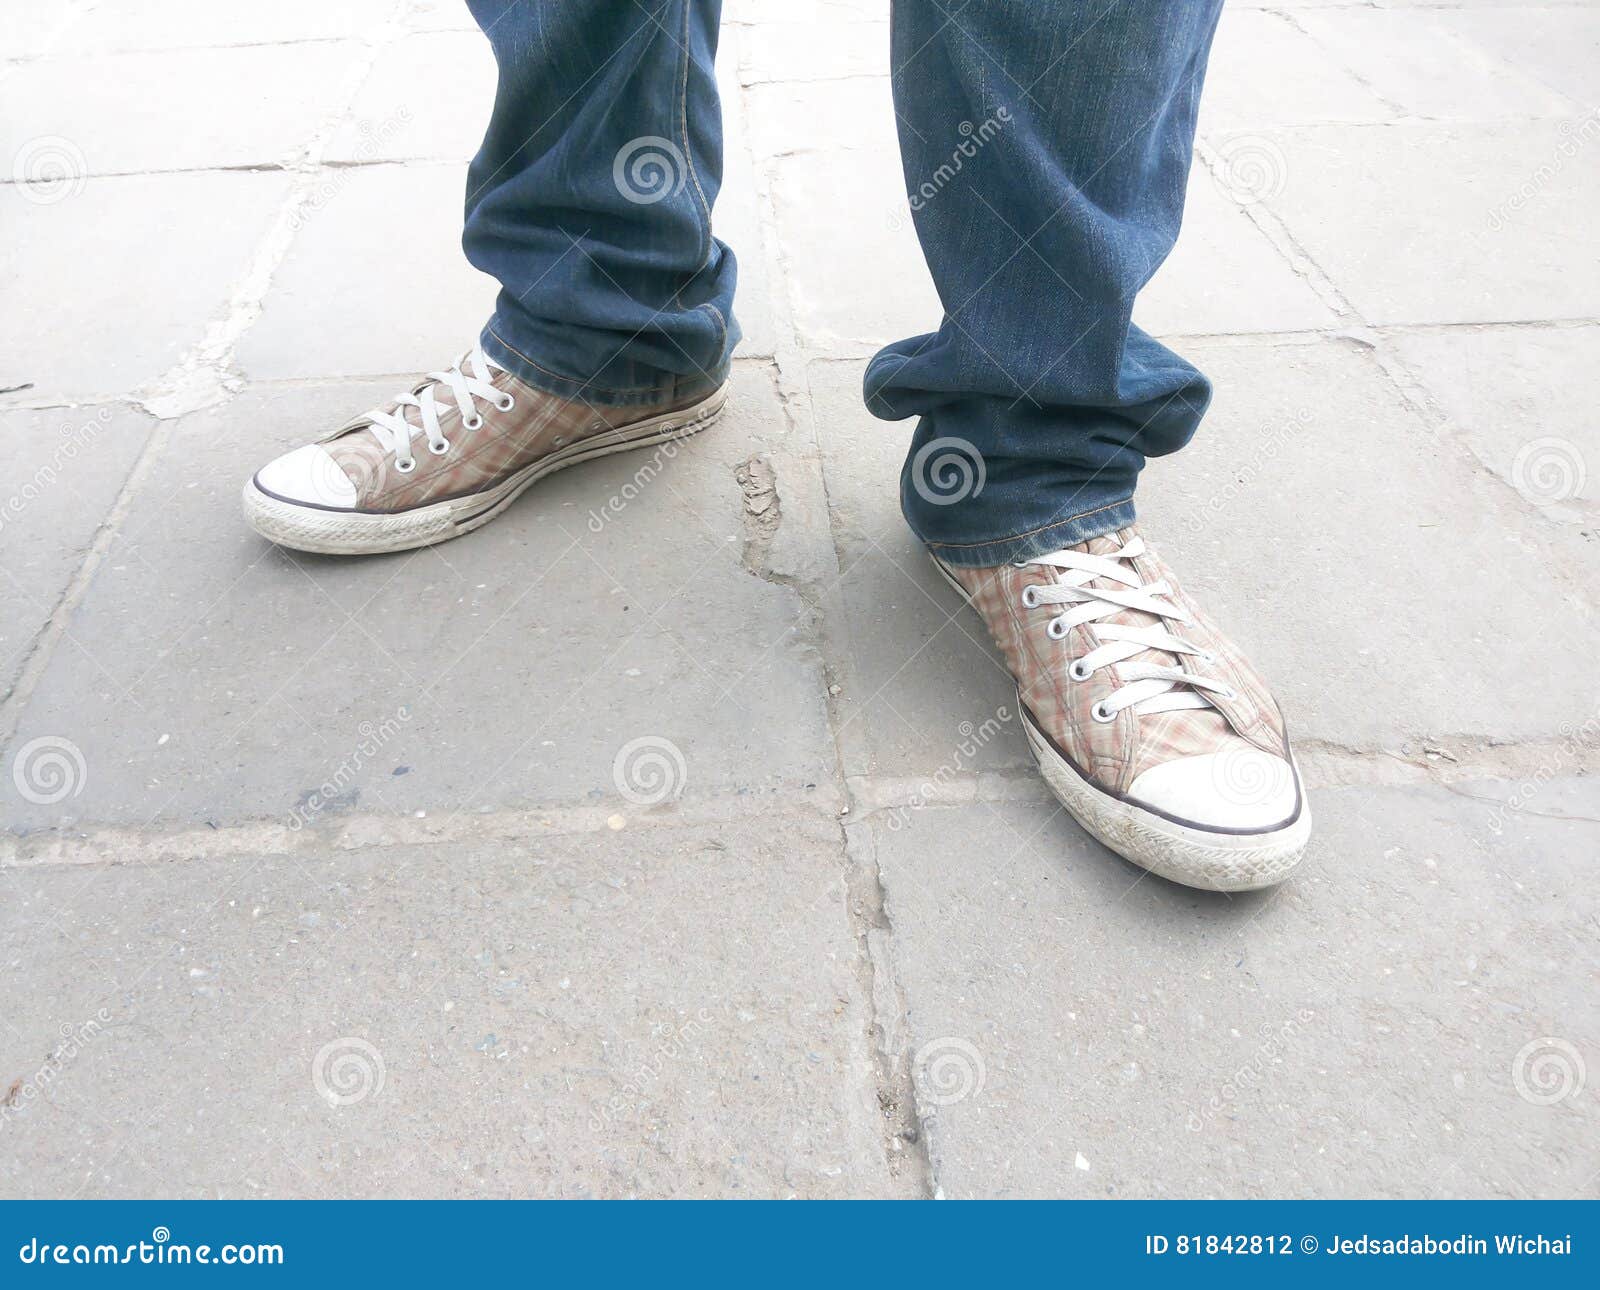 Men& X27;s Feet in Sneakers Standing Stock Photo - Image of floor, step ...